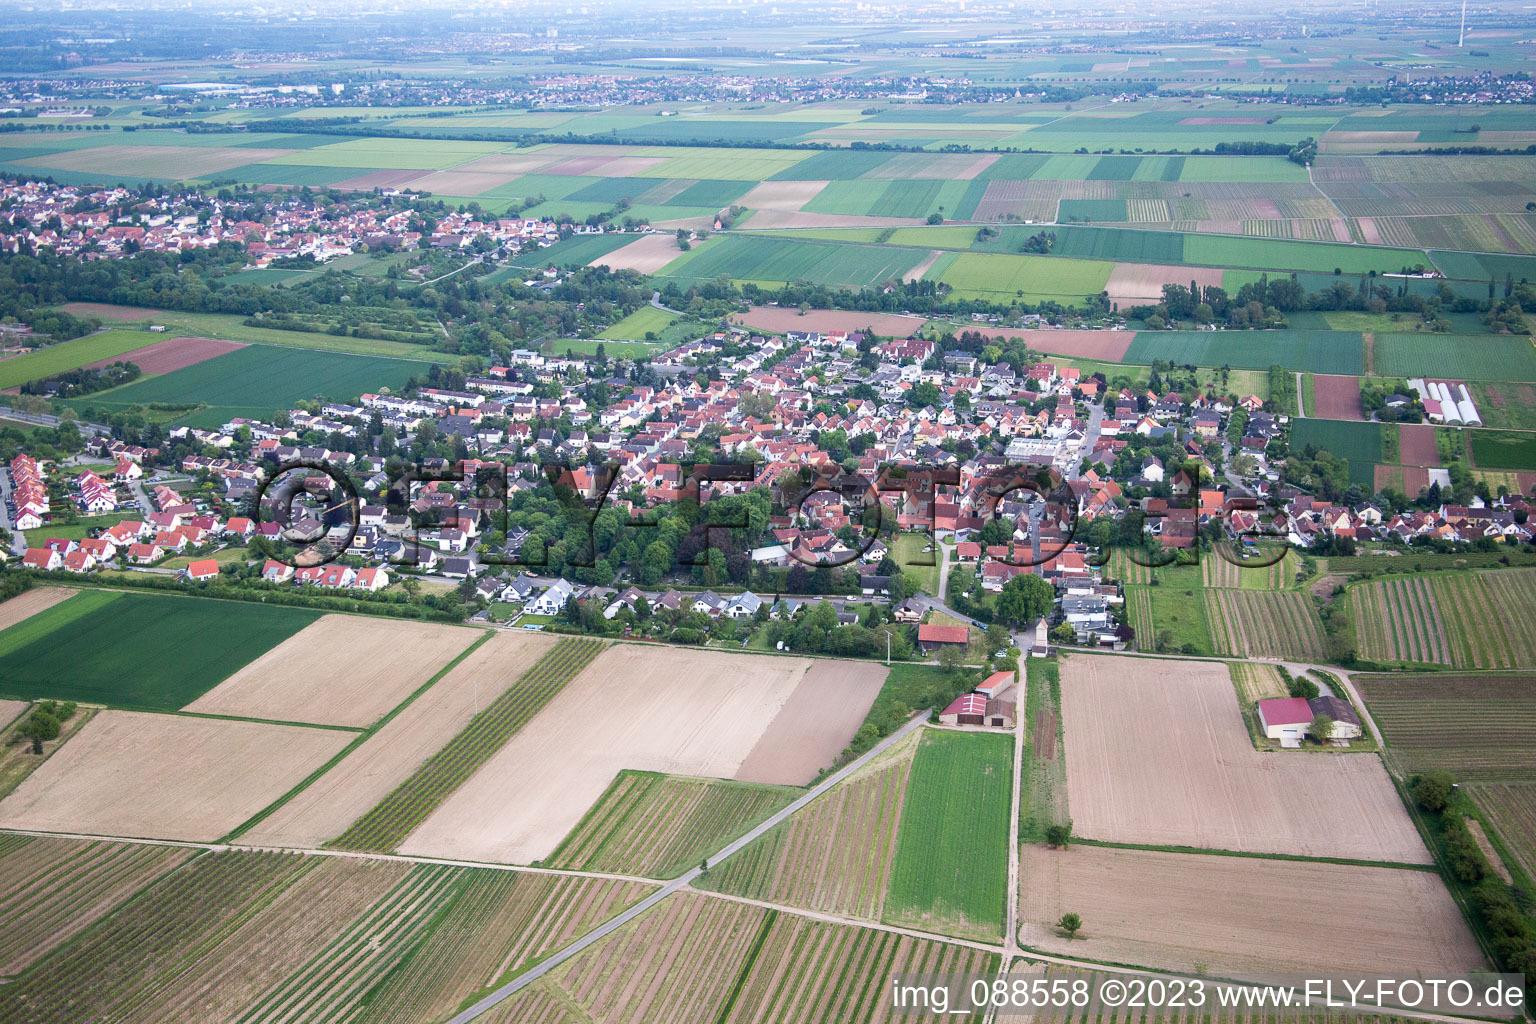 Vue aérienne de Quartier Leiselheim in Worms dans le département Rhénanie-Palatinat, Allemagne